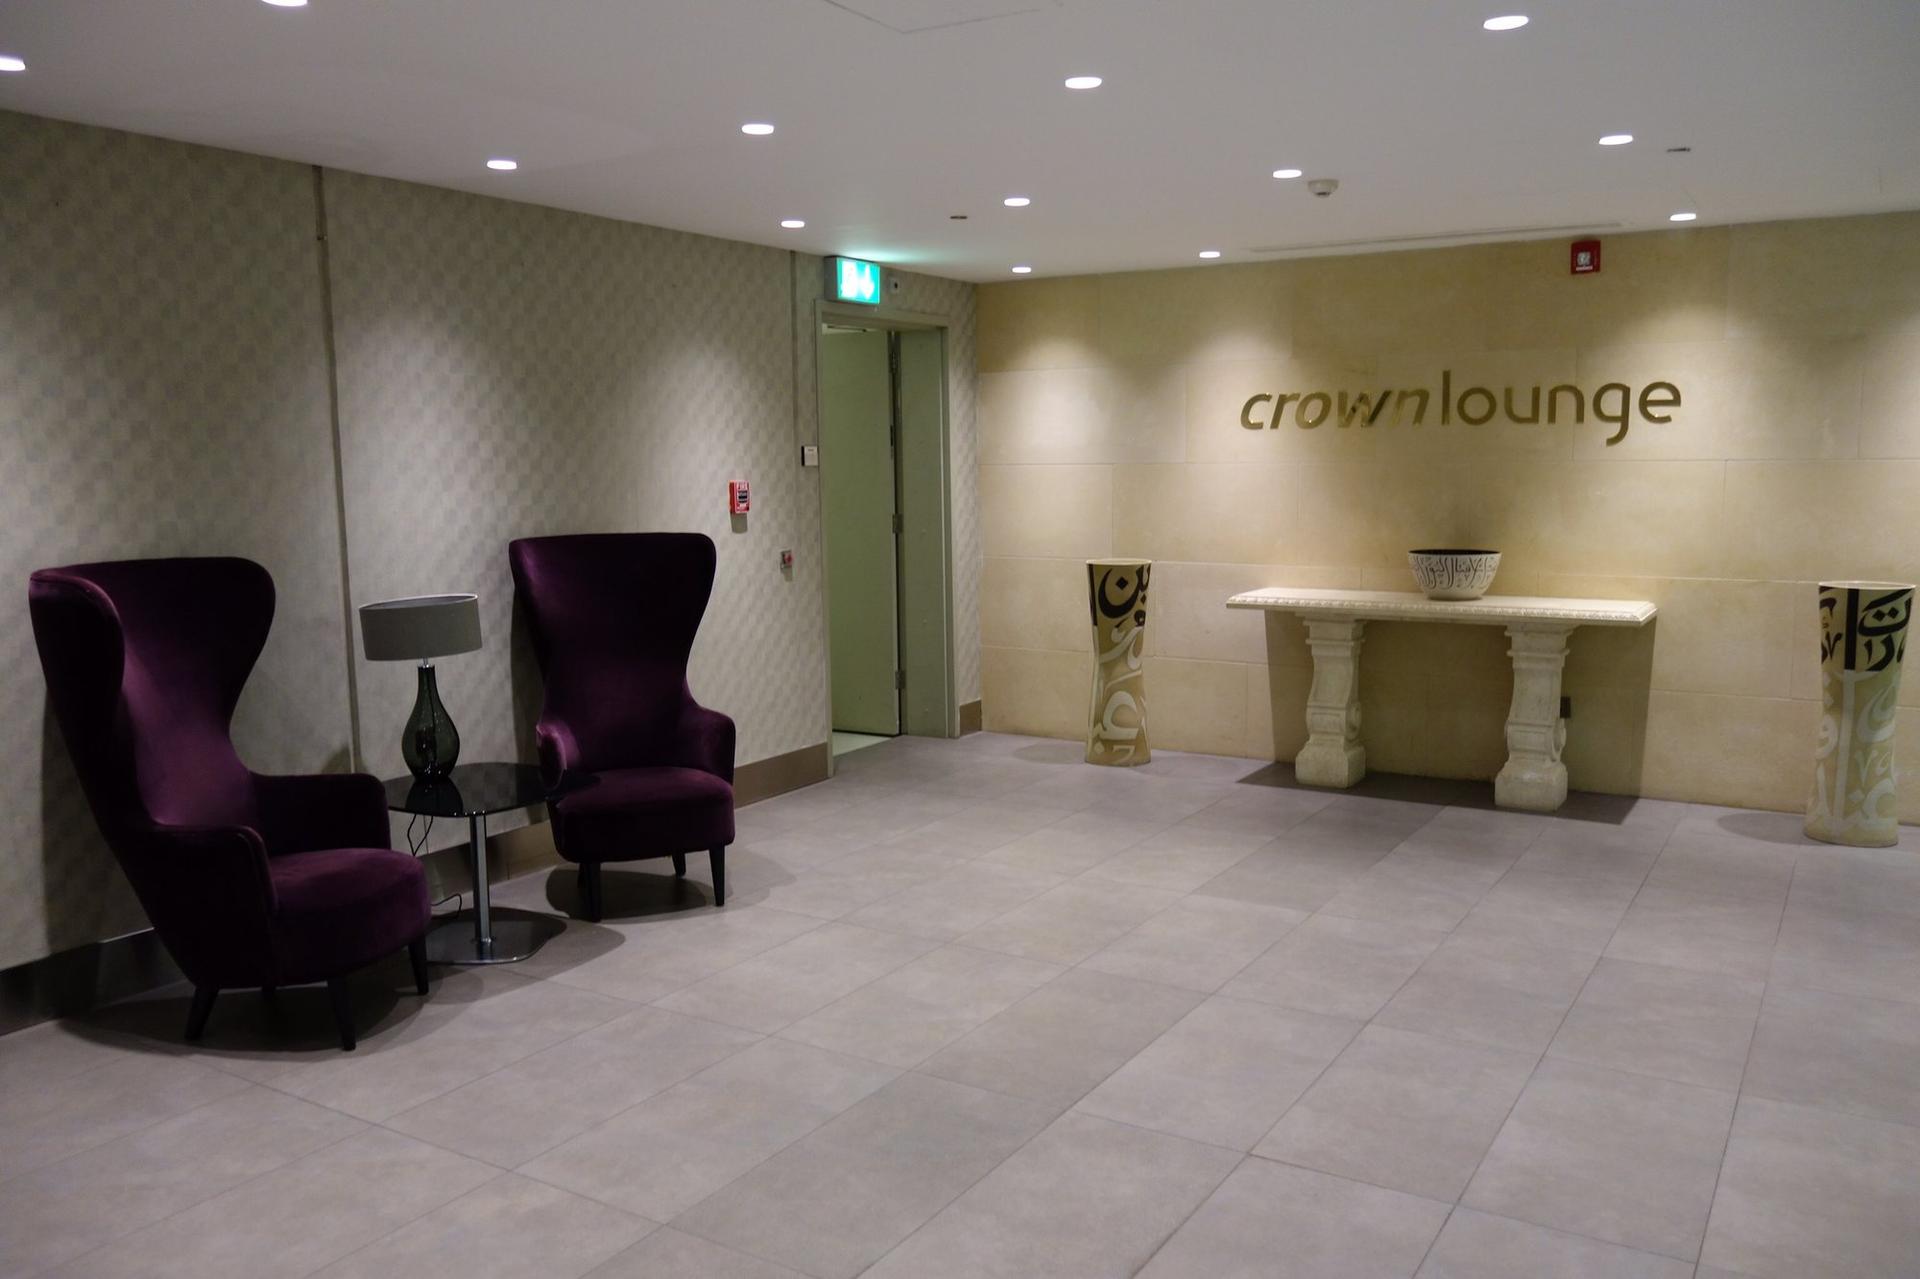 Royal Jordanian Crown Lounge image 4 of 38